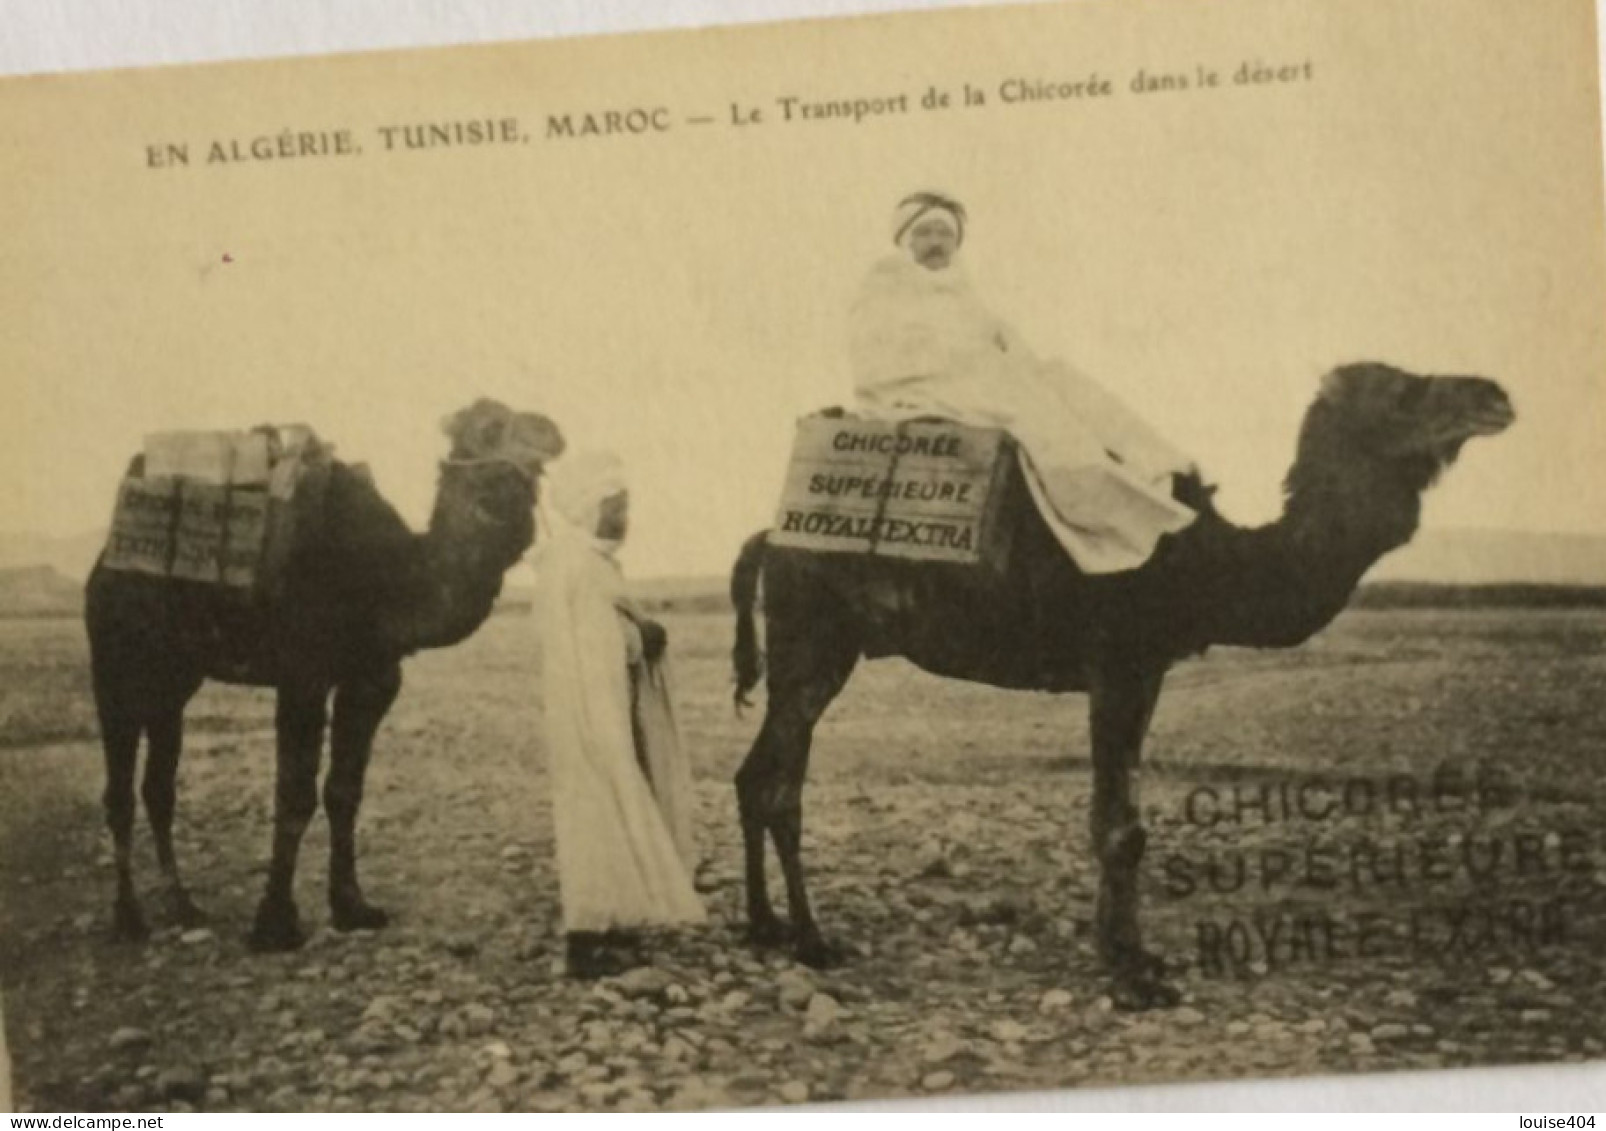 EE ALGERIE MAROC  TUNISIE TRANSPORT DE LA CHICOREE DANS LE DESERT - Métiers